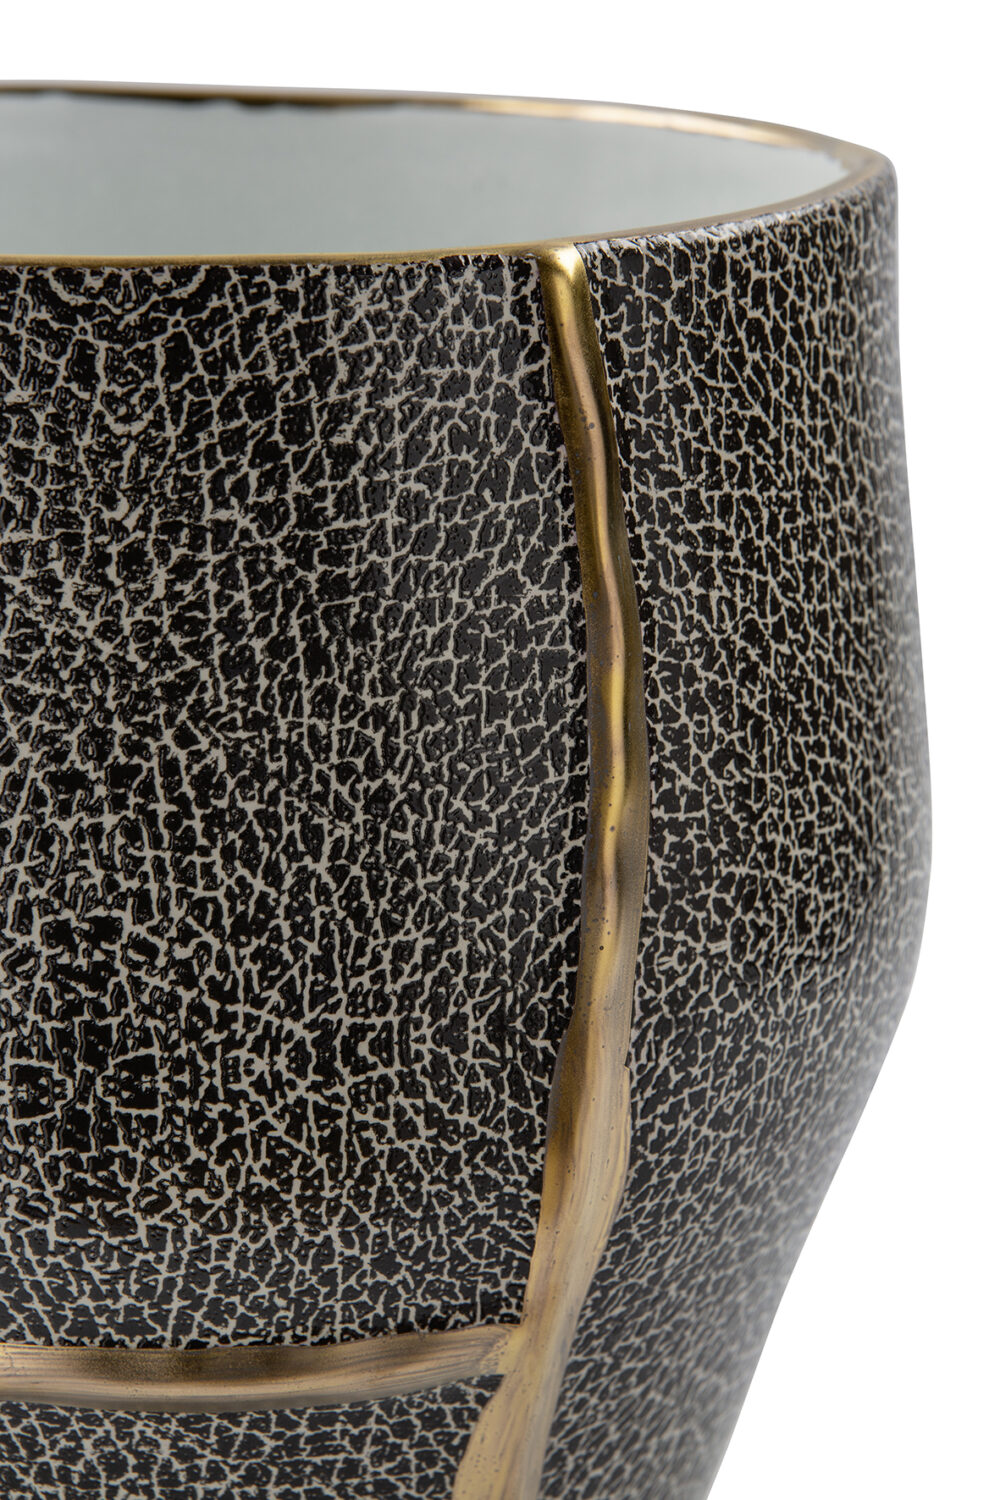 127165 Vase Dekovase Tischvase Blumenvase gold, grau, schwarz Fink FAVORA